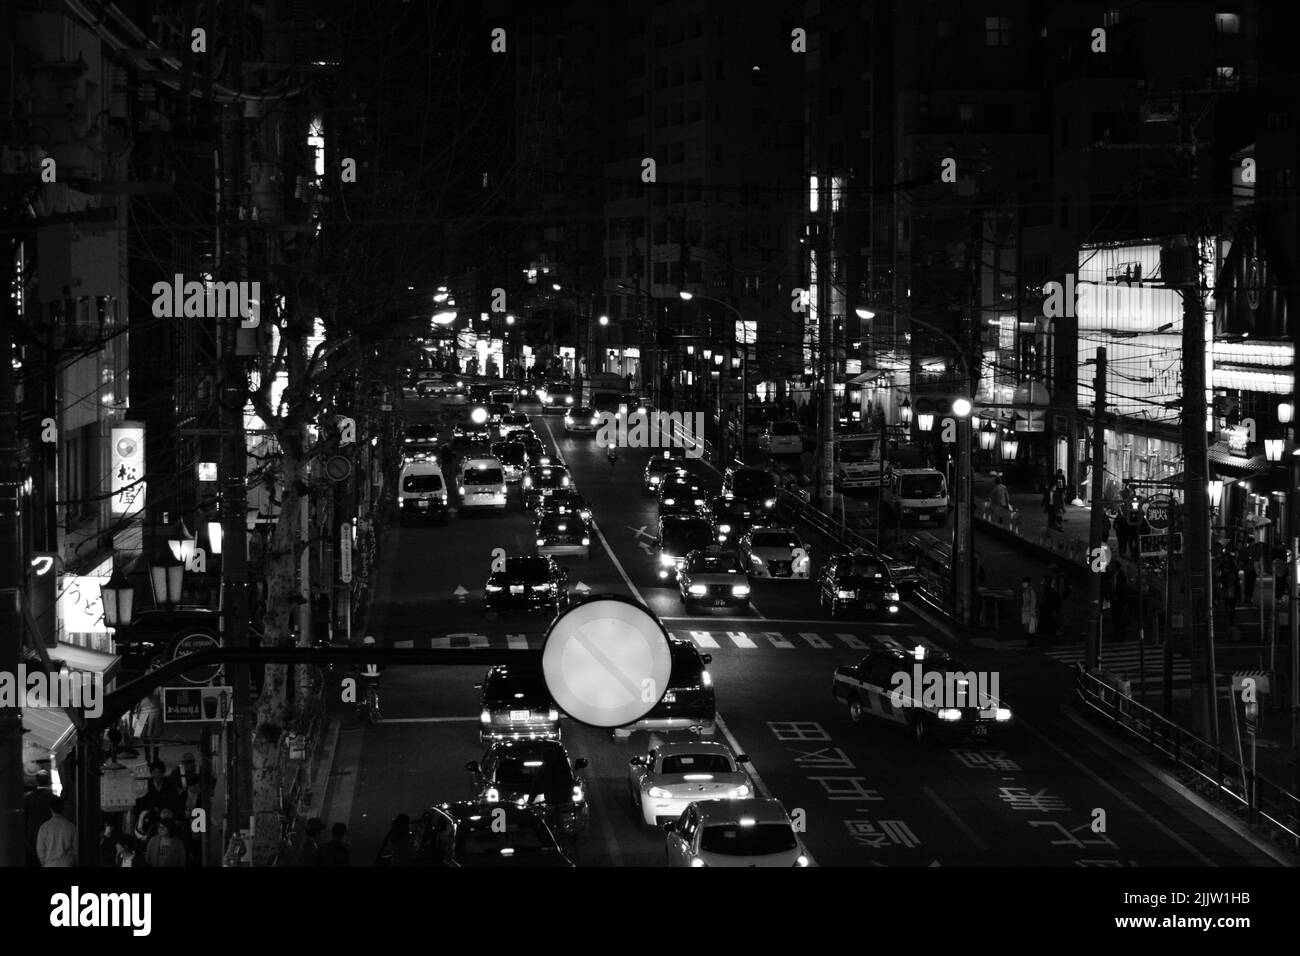 Vue nocturne en niveaux de gris sur une rue de Tokyo Banque D'Images